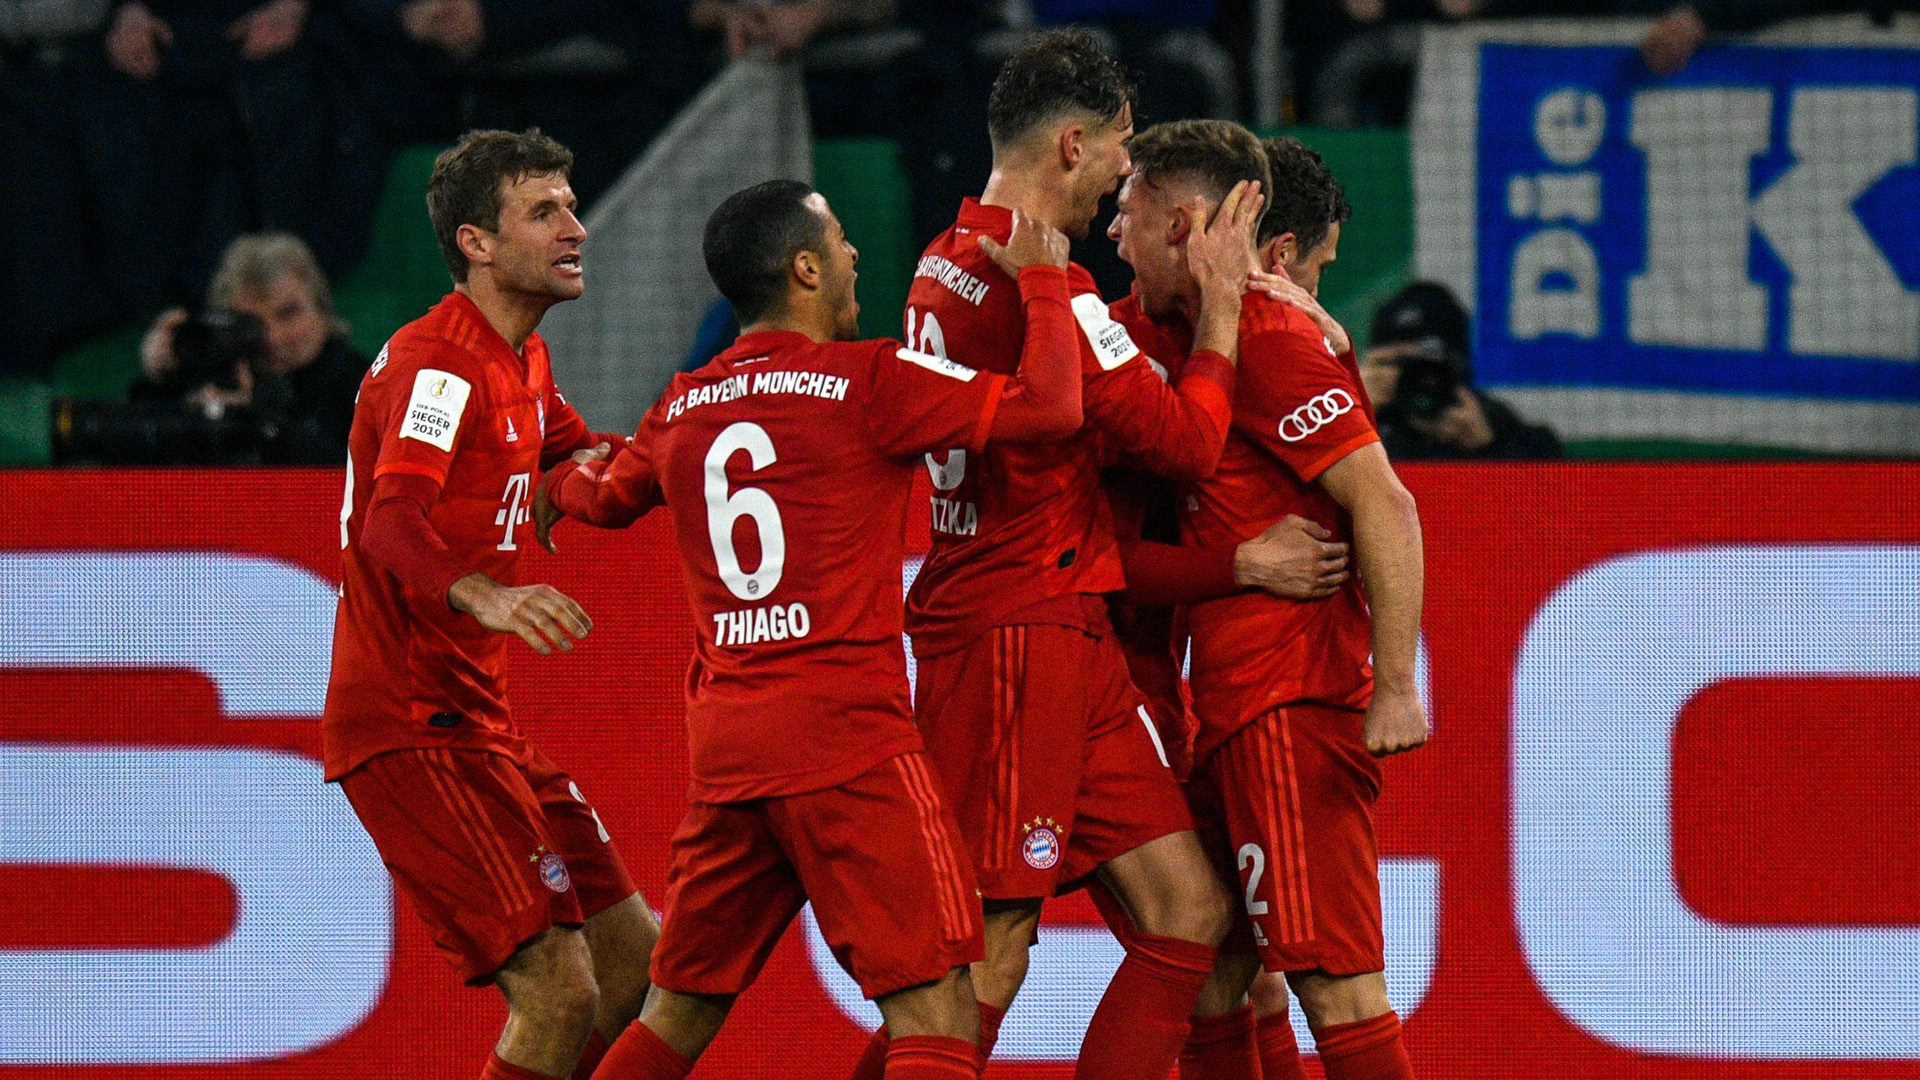 Shalke04-Bayern Munich (0-1) - Le Bayern qualifié pour les demi-finales